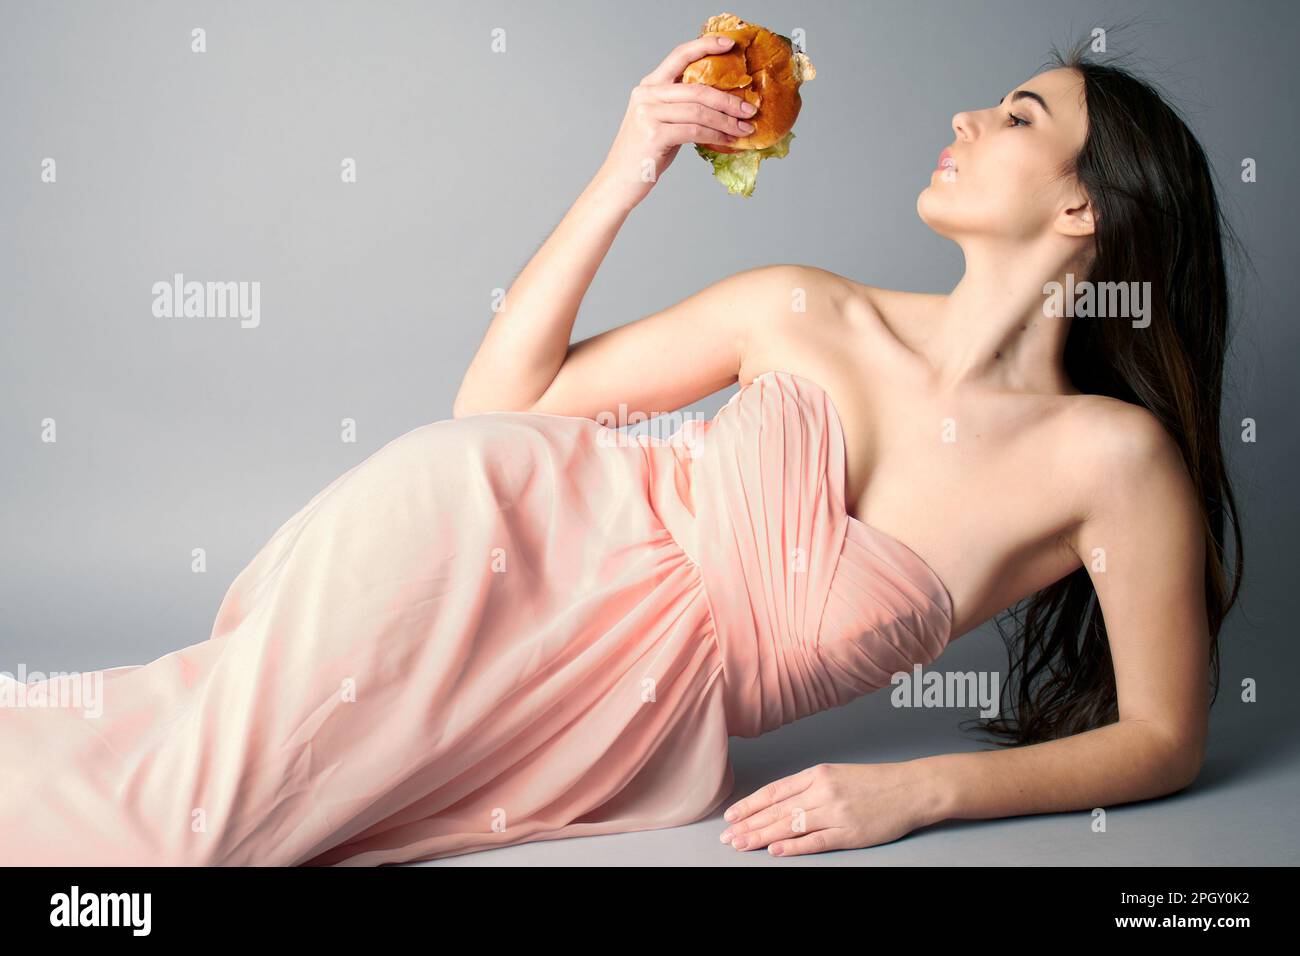 Eine Frau, die in einem durchgehenden pinkfarbenen Ballkleid mit einem Hamburger lag Stockfoto